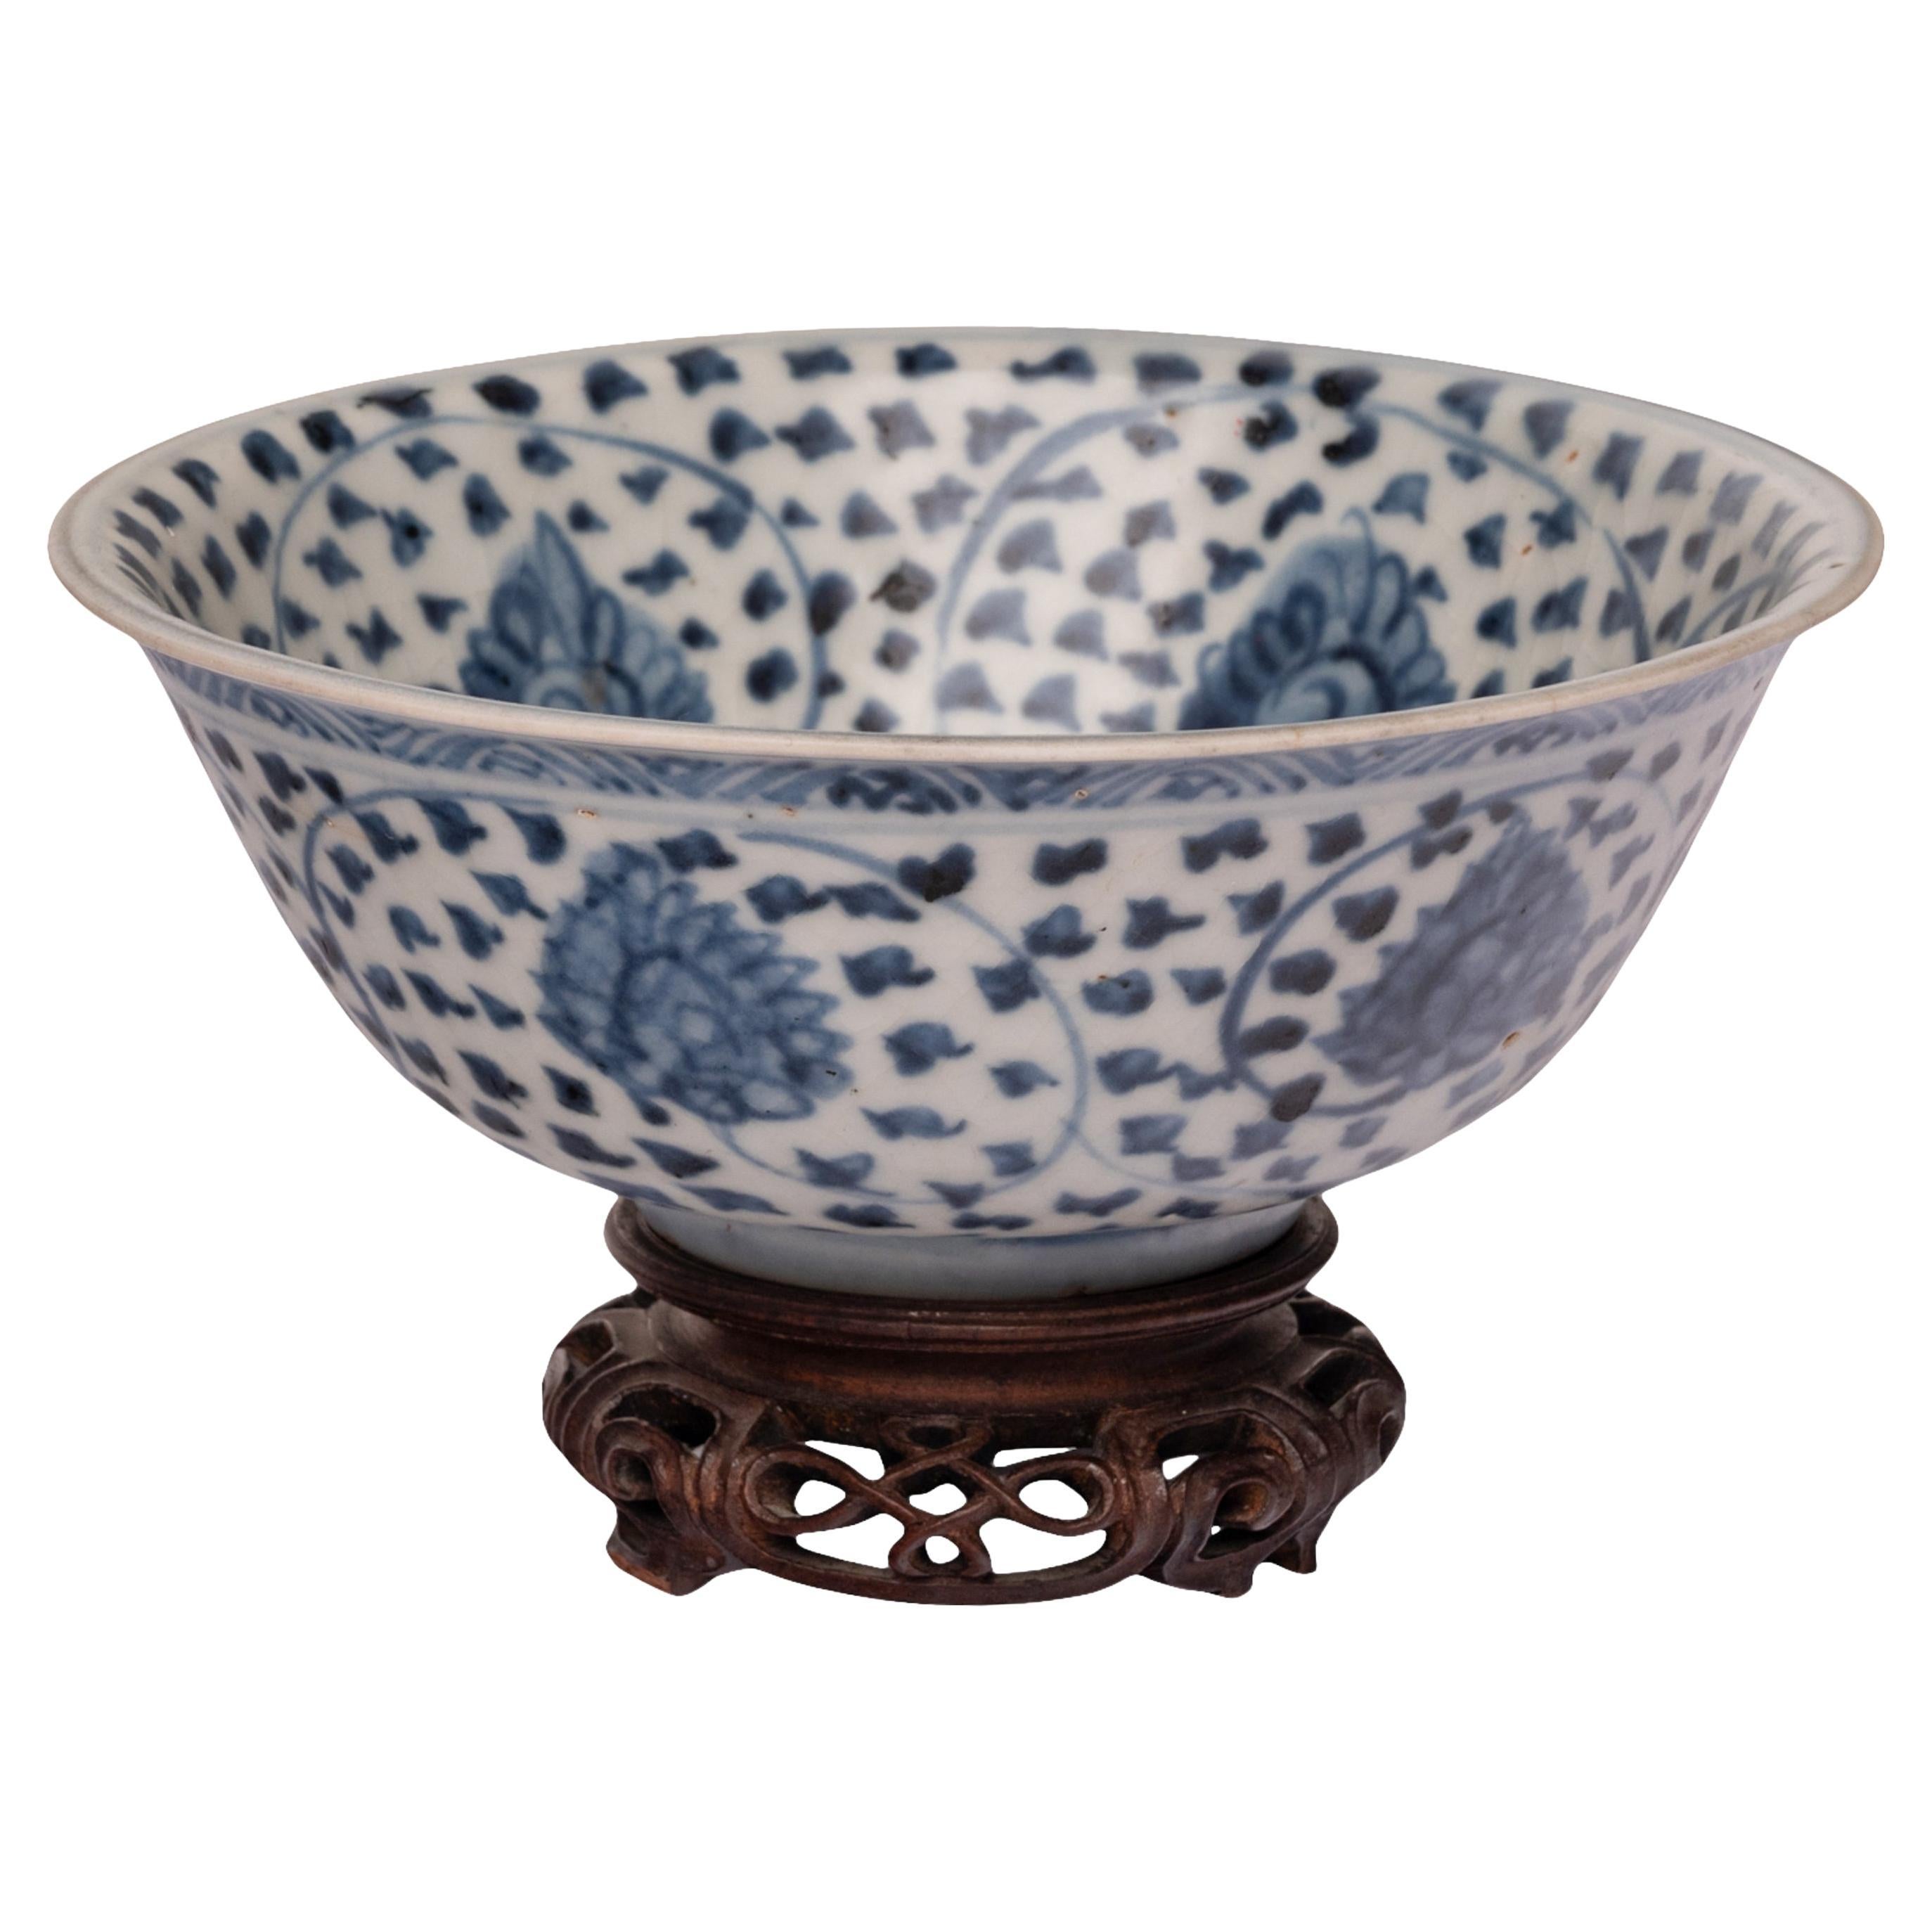 Antique bol en porcelaine bleu blanc de la dynastie Ming chinoise Marché islamique Circa 1550